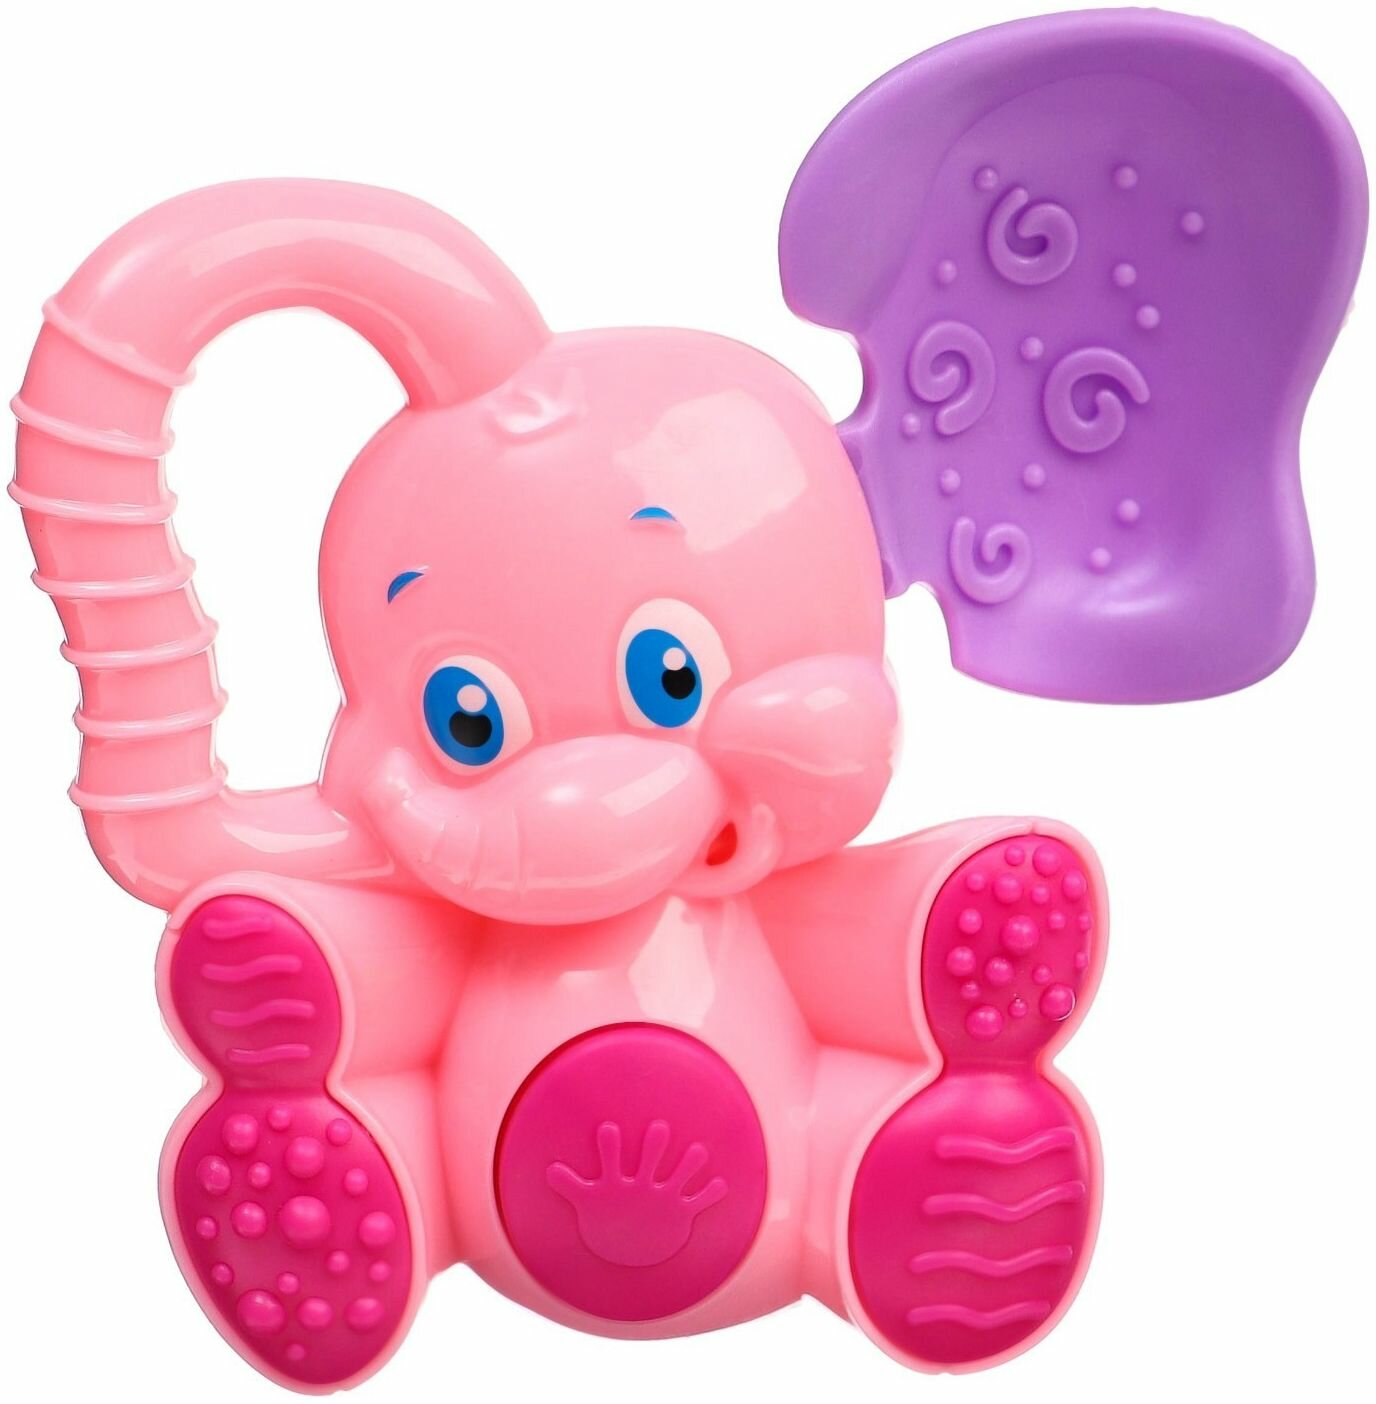 Погремушка-пищалка "Слоник" с эластичными элементами, первая развивающая игрушка для малышей, детская шумелка, грызунок для младенцев, силиконовый прорезыватель для зубов, от 3 месяцев, цвет микс